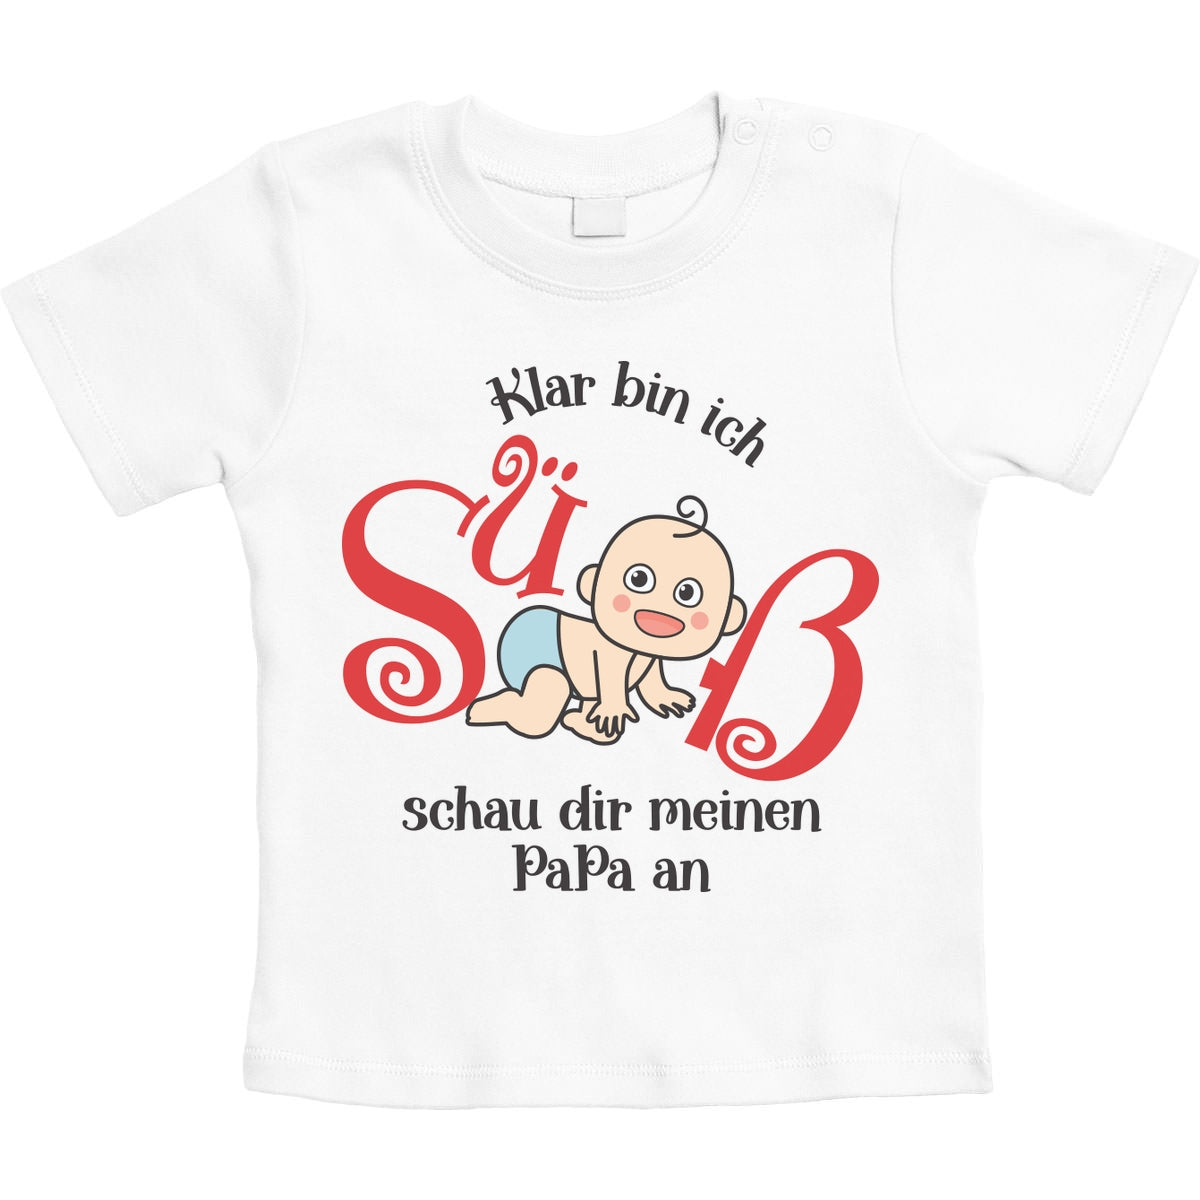 Klar bin ich süß mit süßes Baby Geschenk Papa Unisex Baby T-Shirt Gr. 66-93